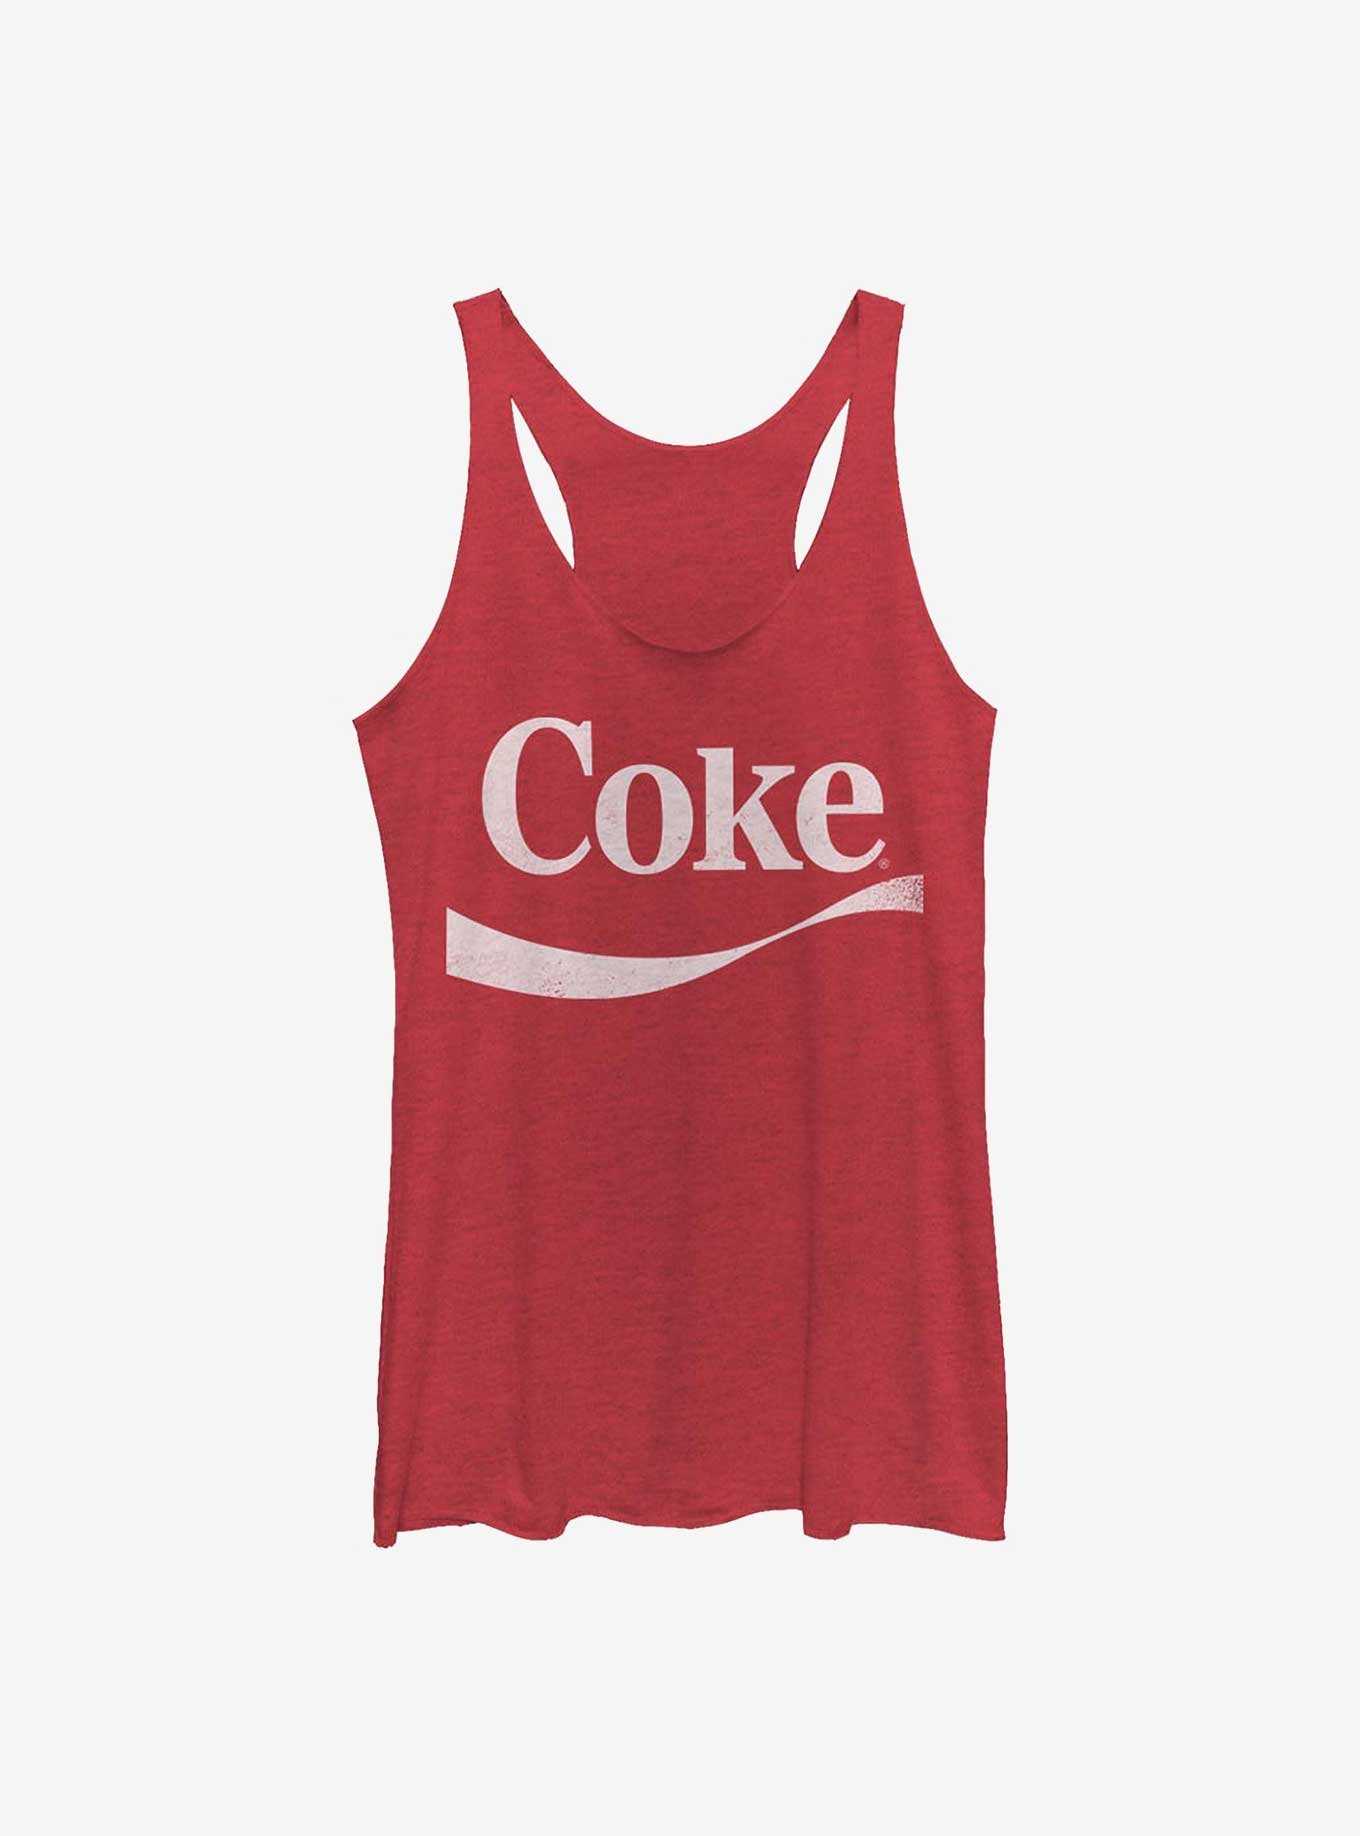 Coca-Cola Simple Coke Swoosh Womens Tank Top, , hi-res